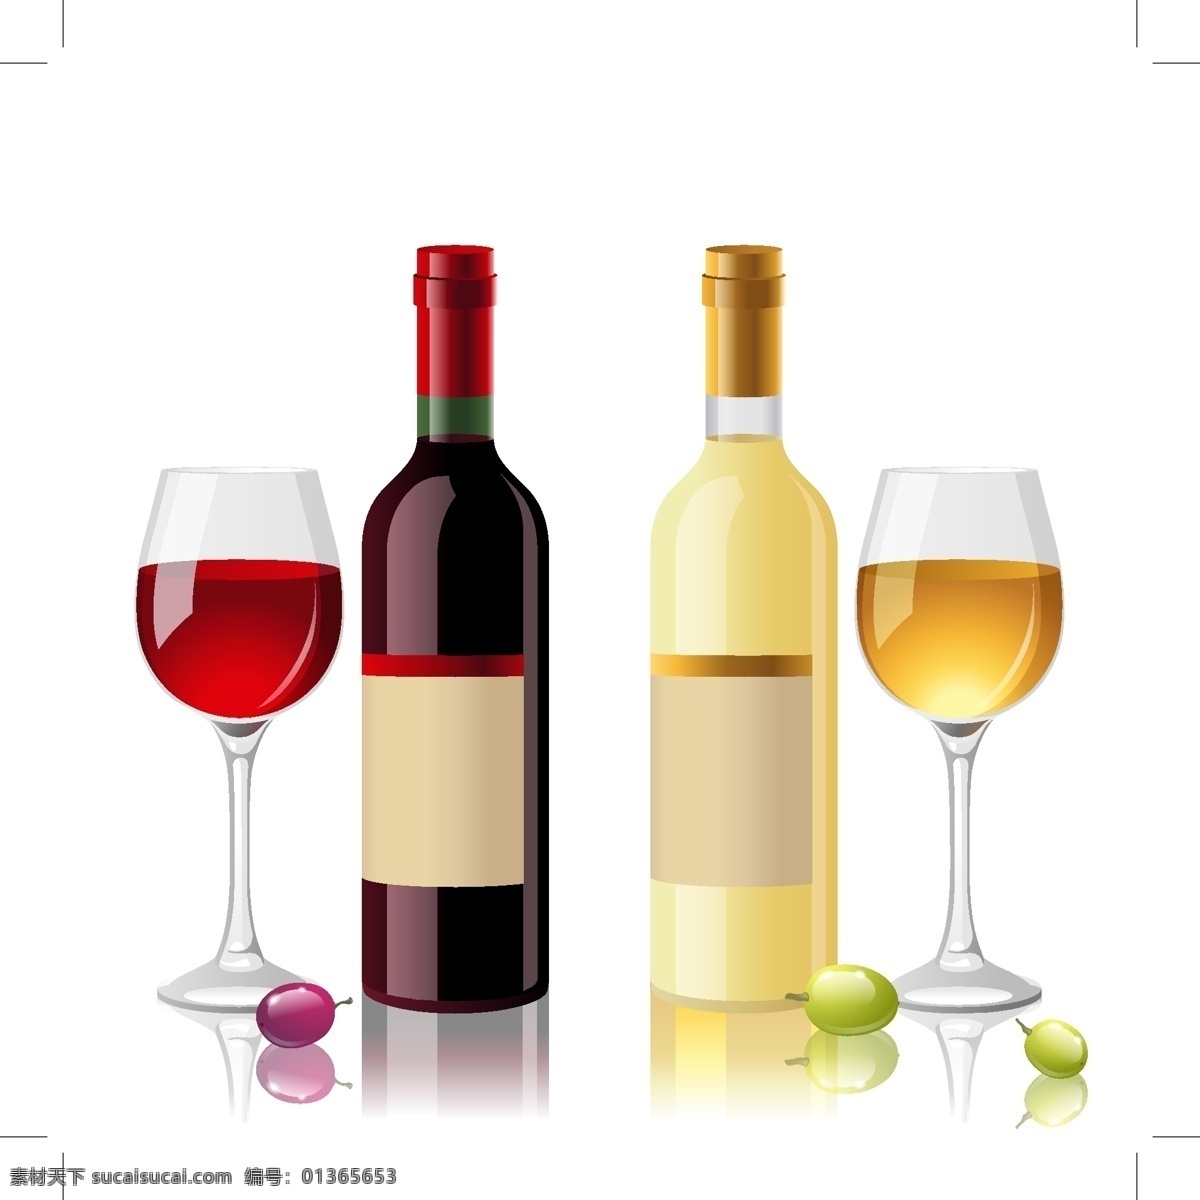 红 白葡萄酒 红白 酒 酒杯 酒瓶 葡萄 无框画 装饰画 矢量图 日常生活